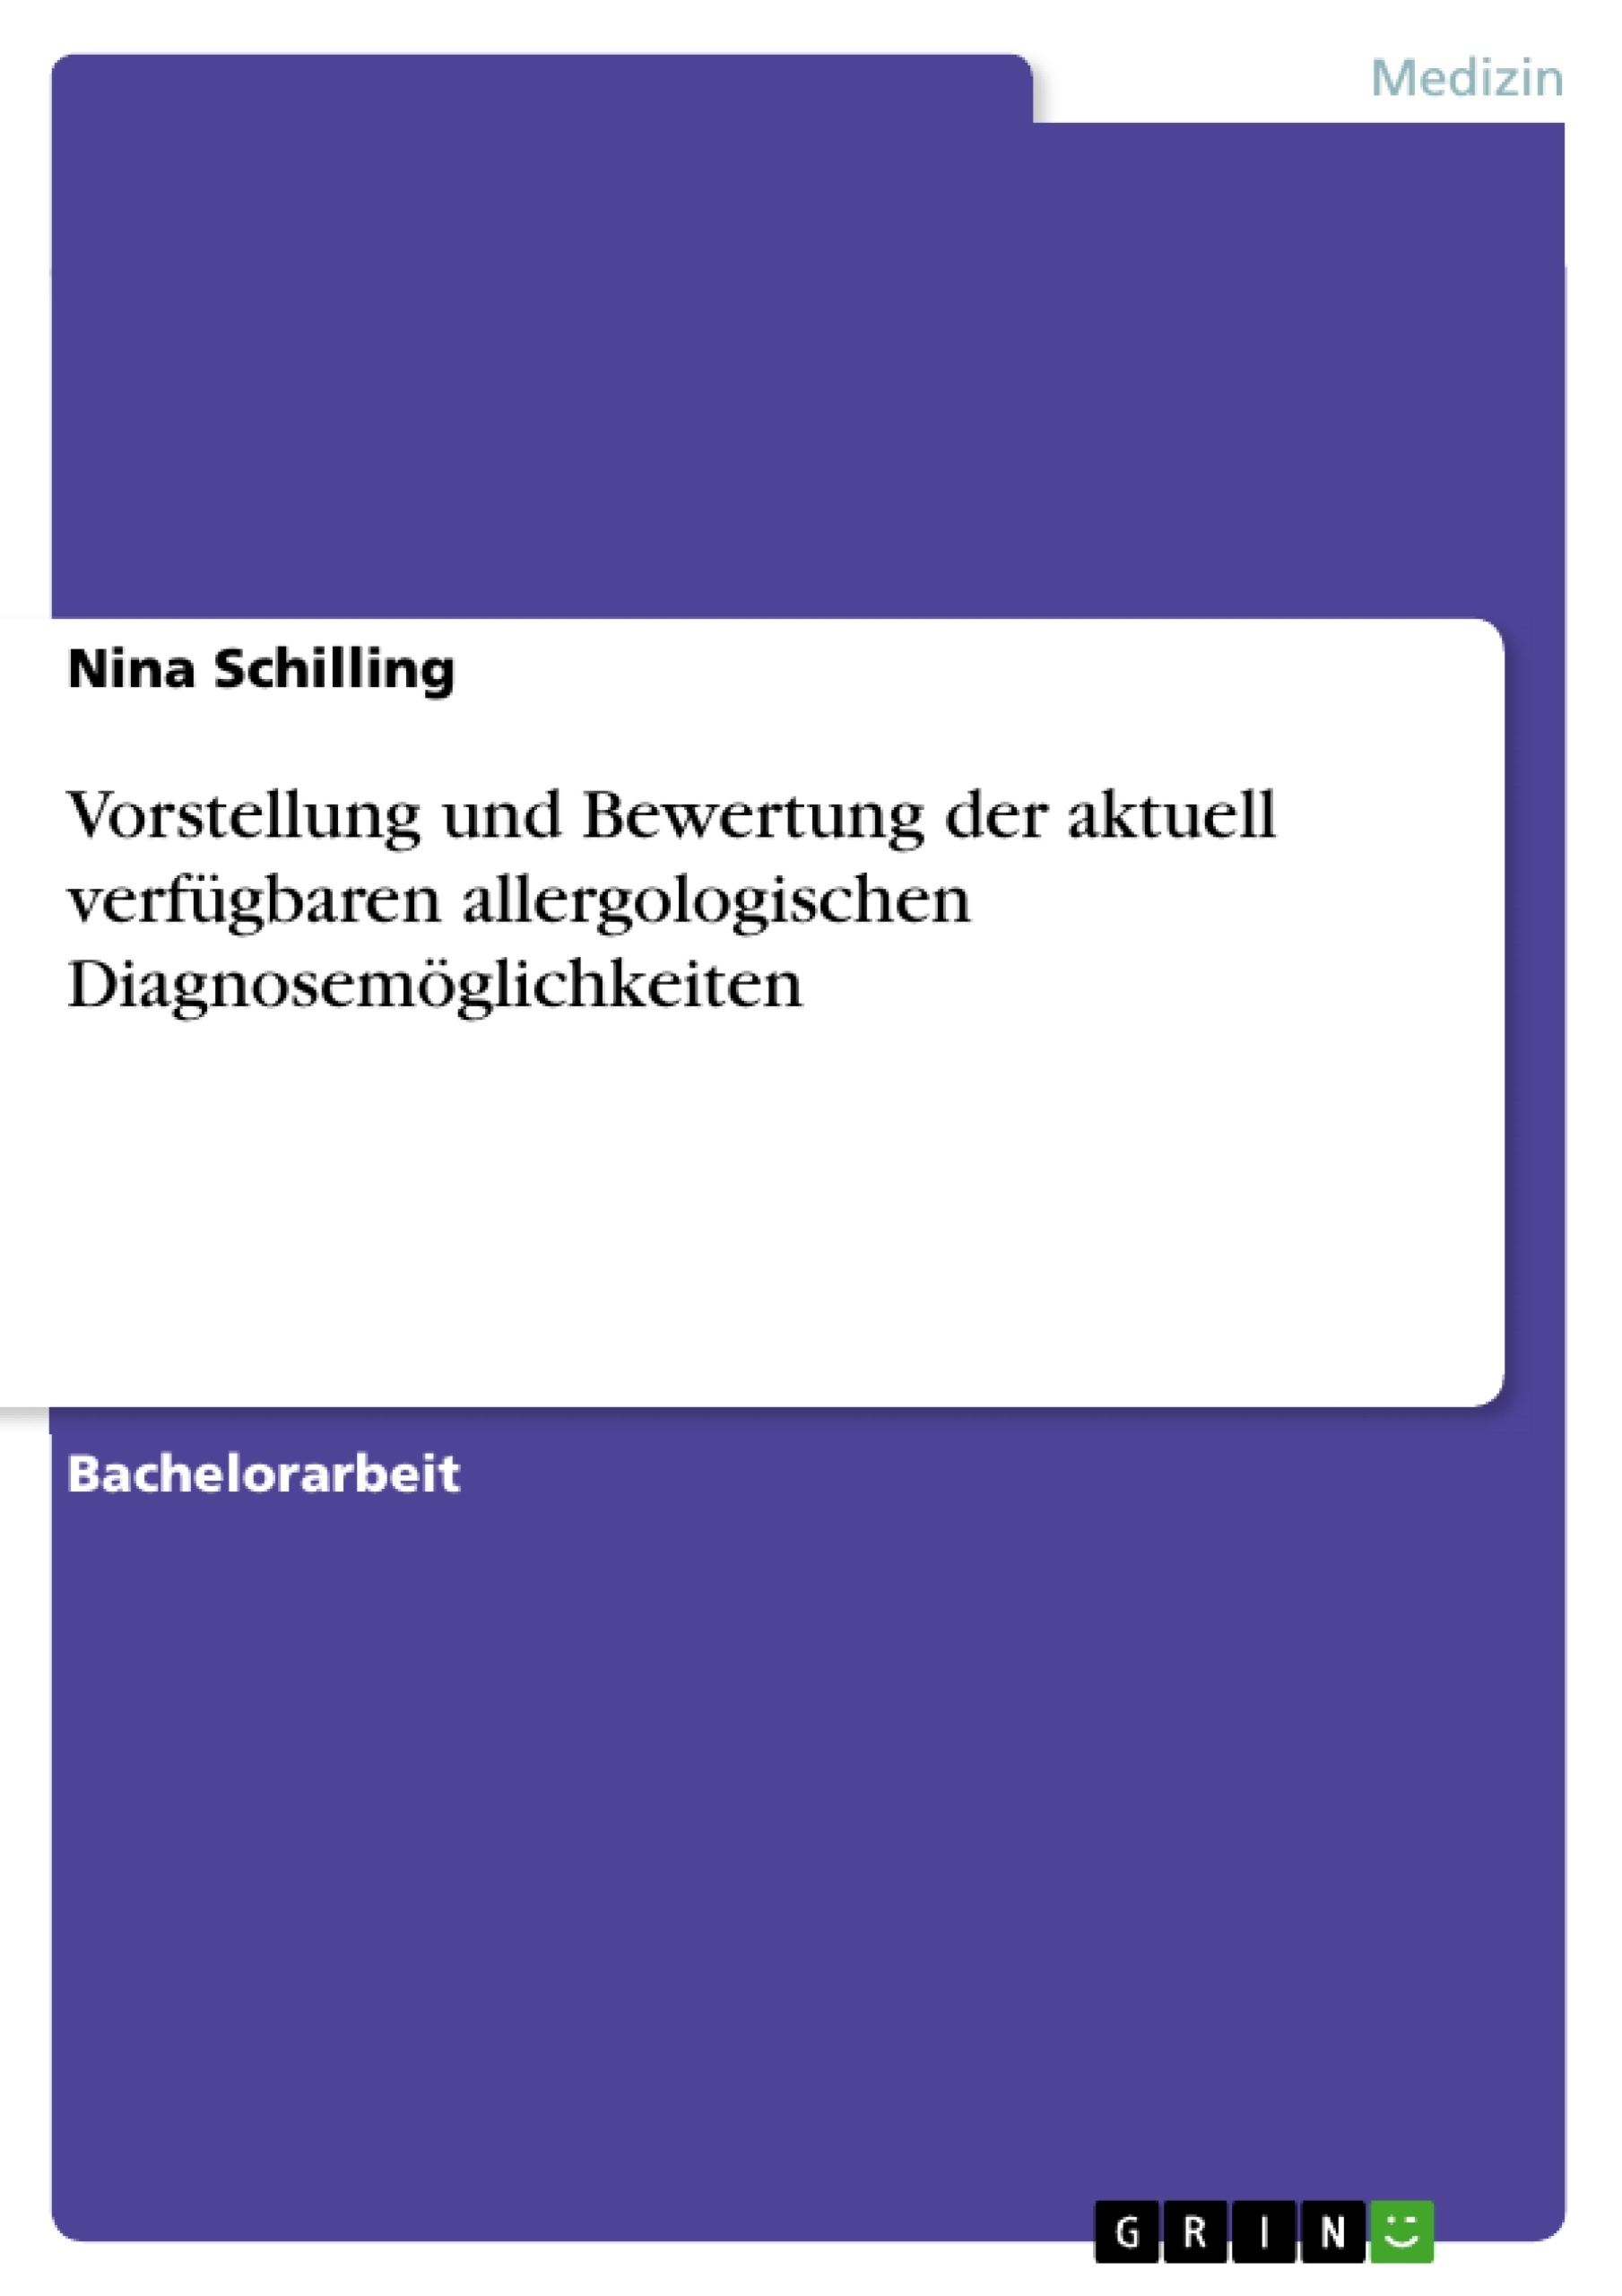 Titre: Vorstellung und Bewertung der aktuell verfügbaren allergologischen Diagnosemöglichkeiten